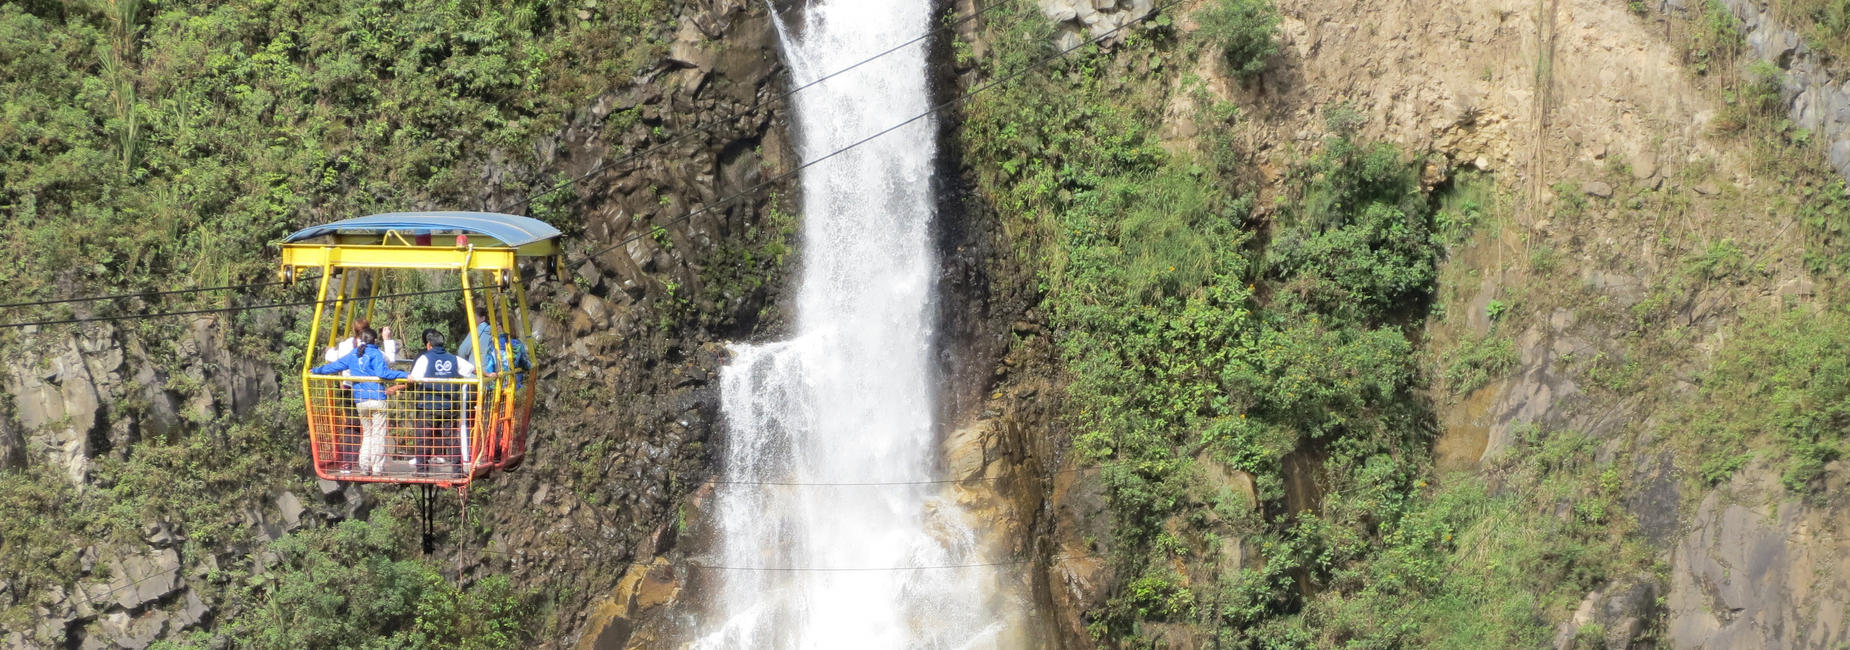 Freiwilligenarbeit in Ecuador: Wasserfall in Ecuador